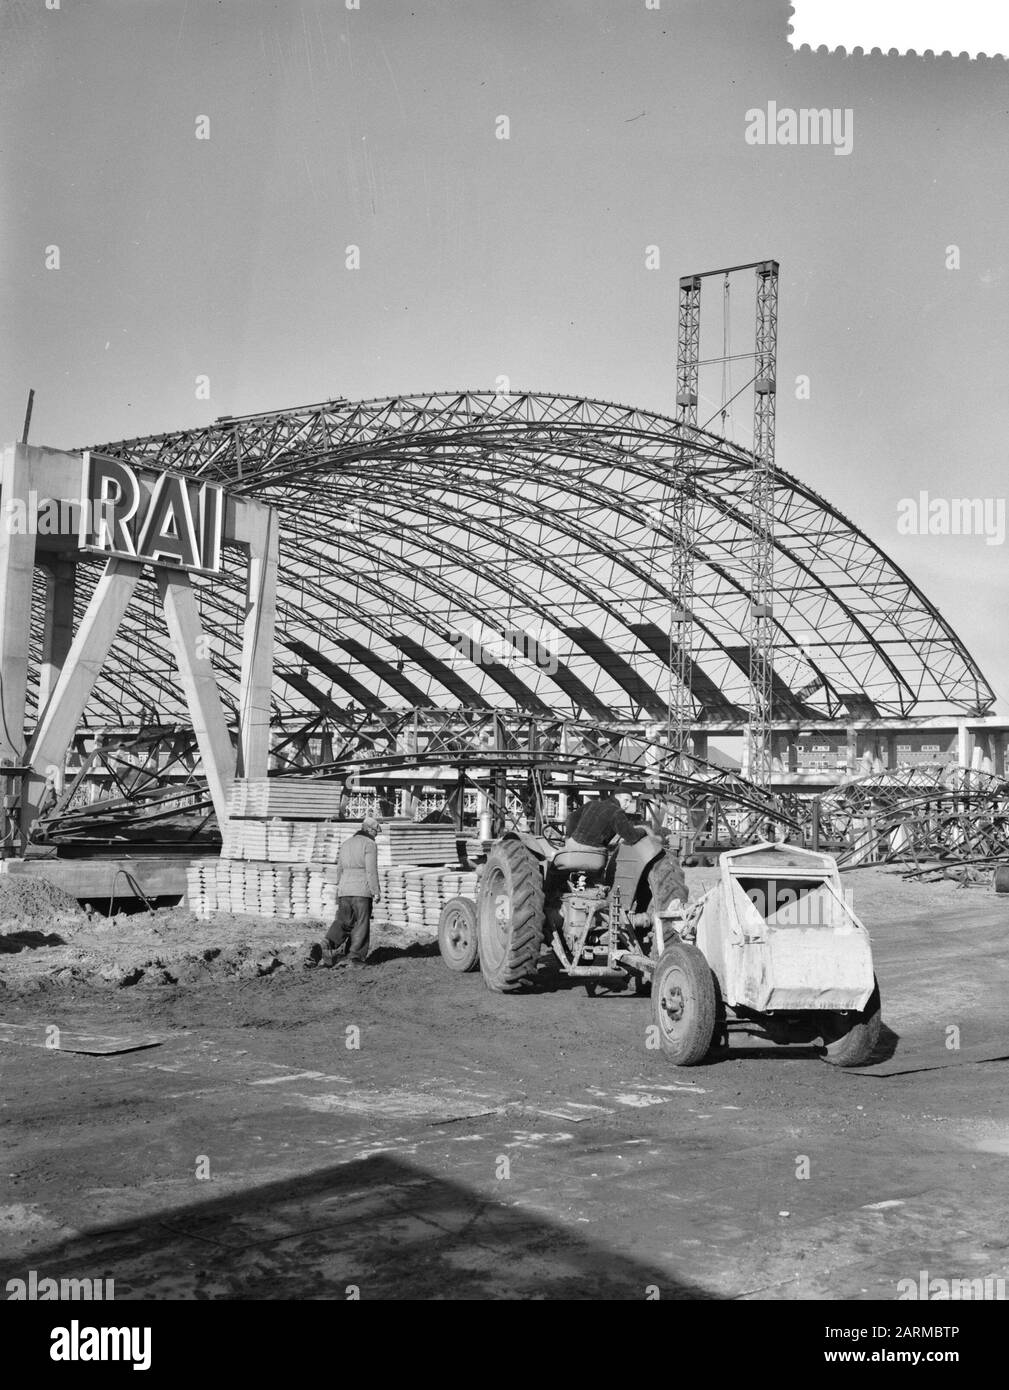 Costruzione del lavoro nuovo edificio RAI Data: 5 novembre 1959 Parole Chiave: Lavori di costruzione, edifici Nome dell'Istituto: Rai Foto Stock